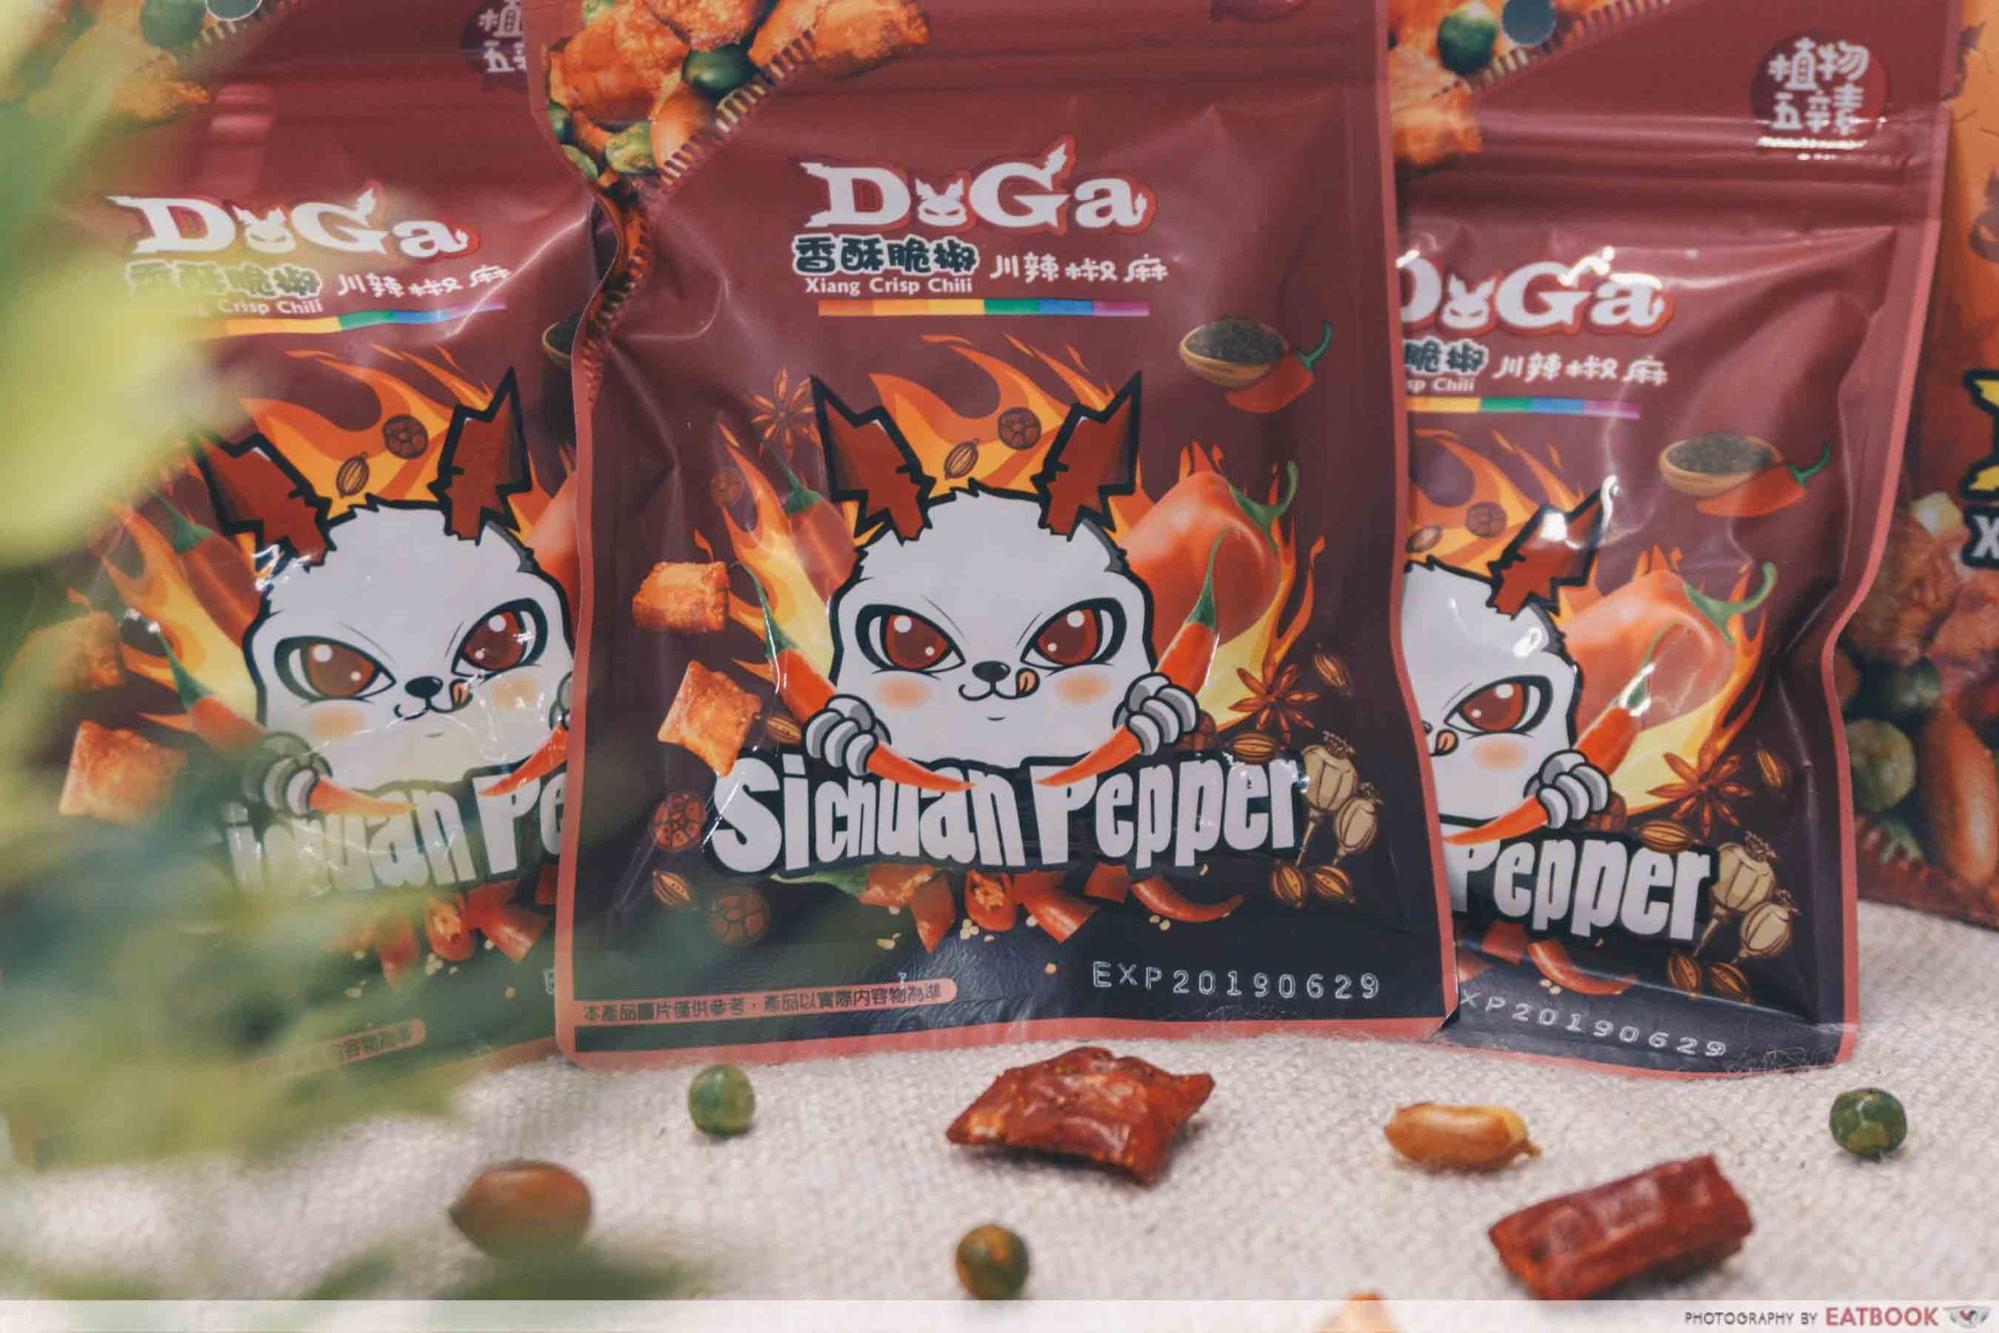 Doga Xiang Crisp Chili - Sichuan Pepper